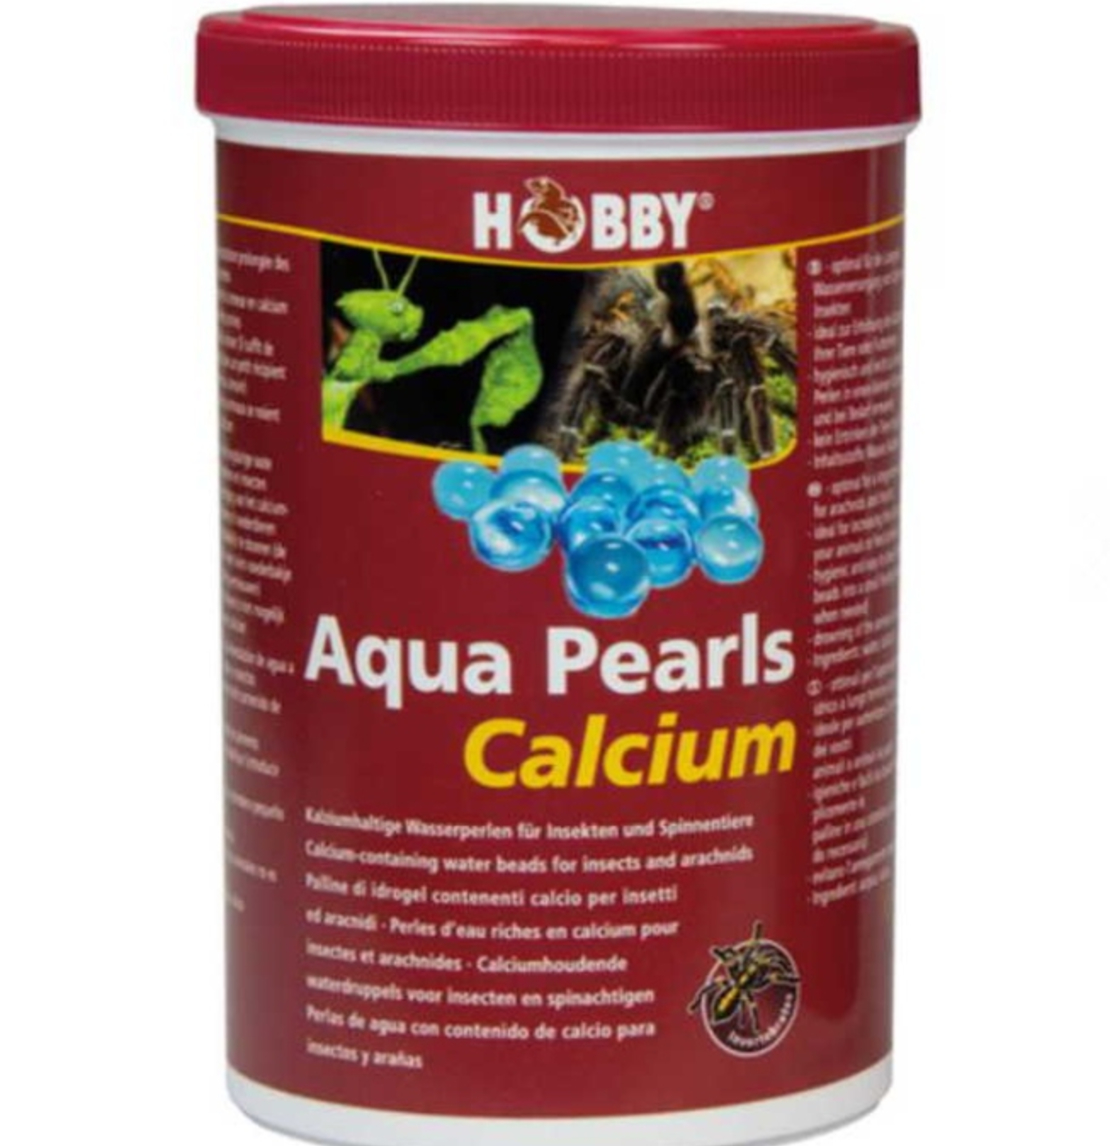 Aqua Pearls Calcium | כדורי מים בג'ל בתוספת קלציום